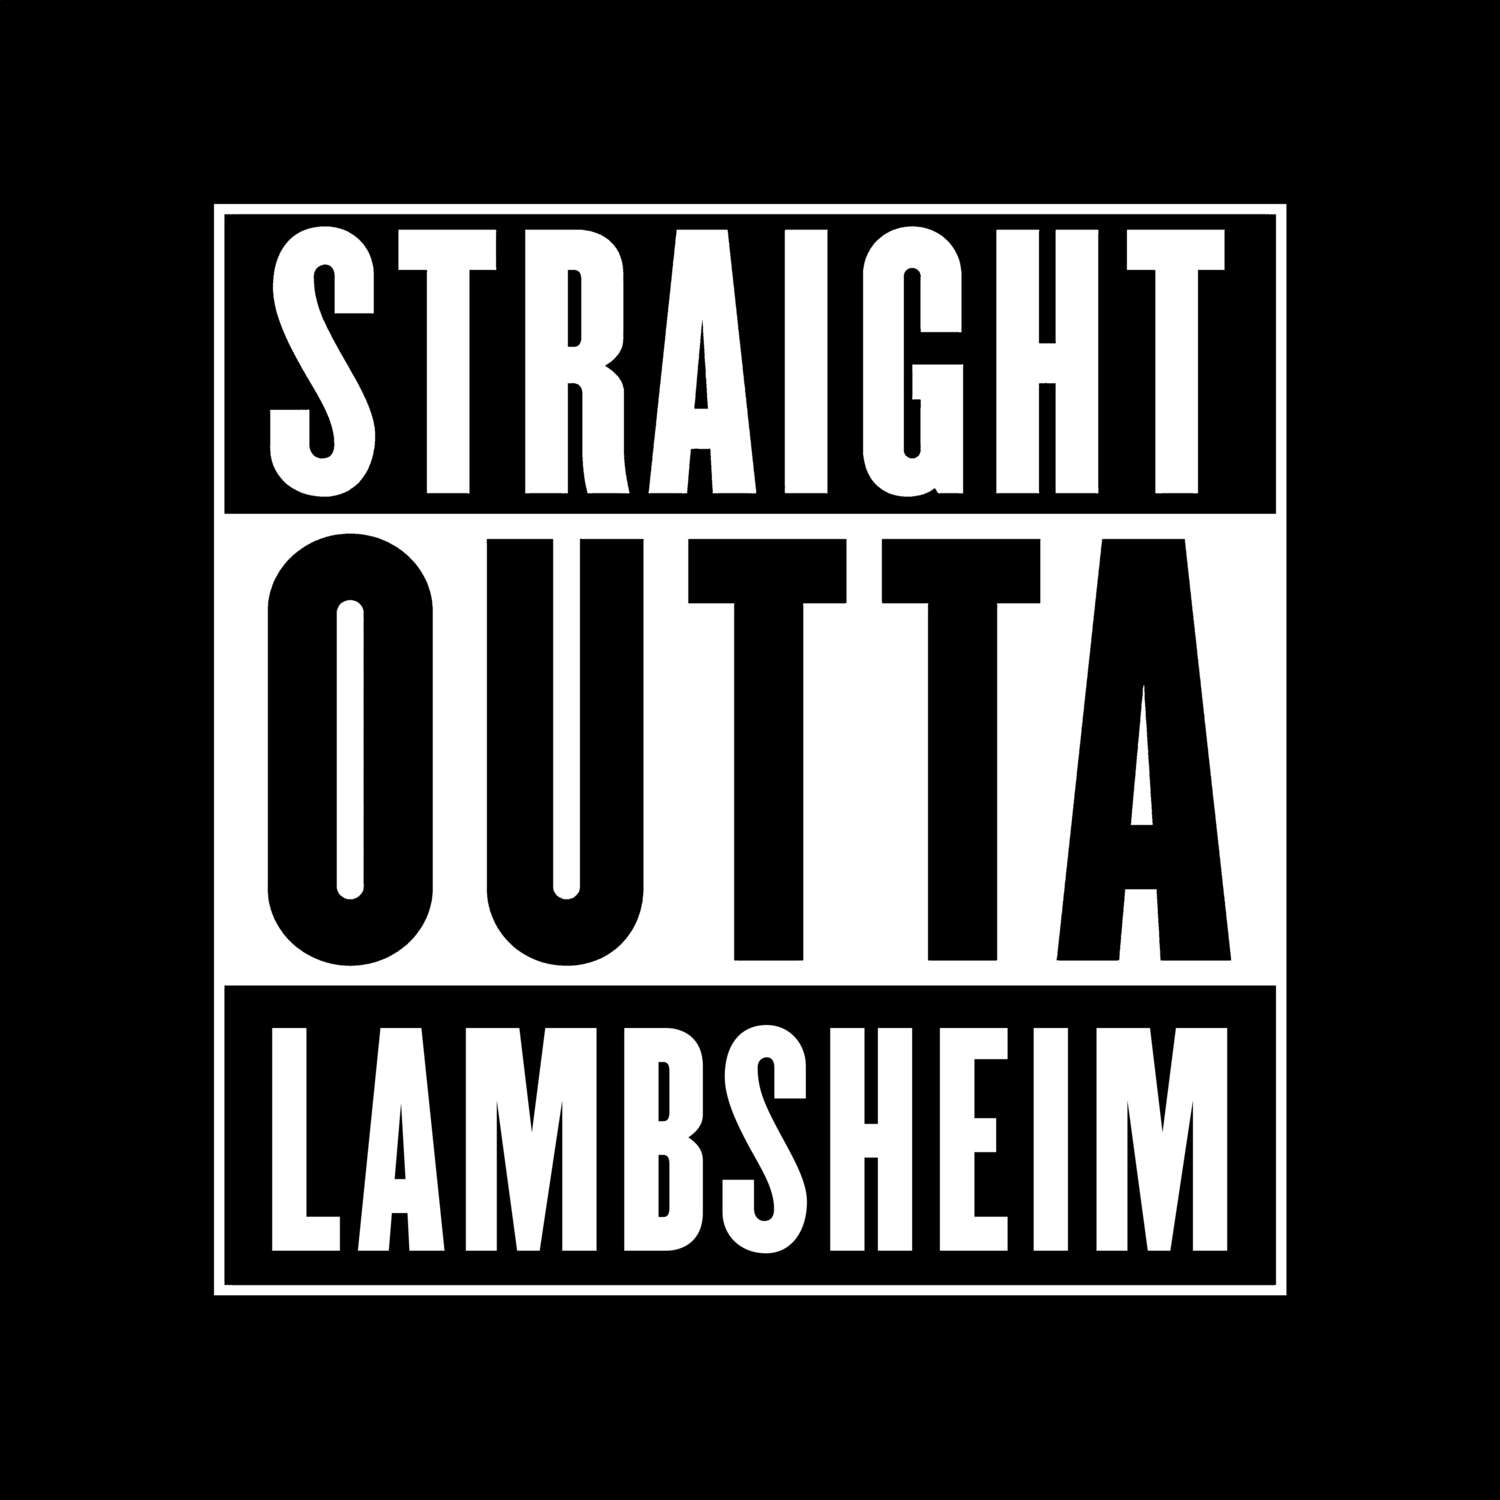 Lambsheim T-Shirt »Straight Outta«